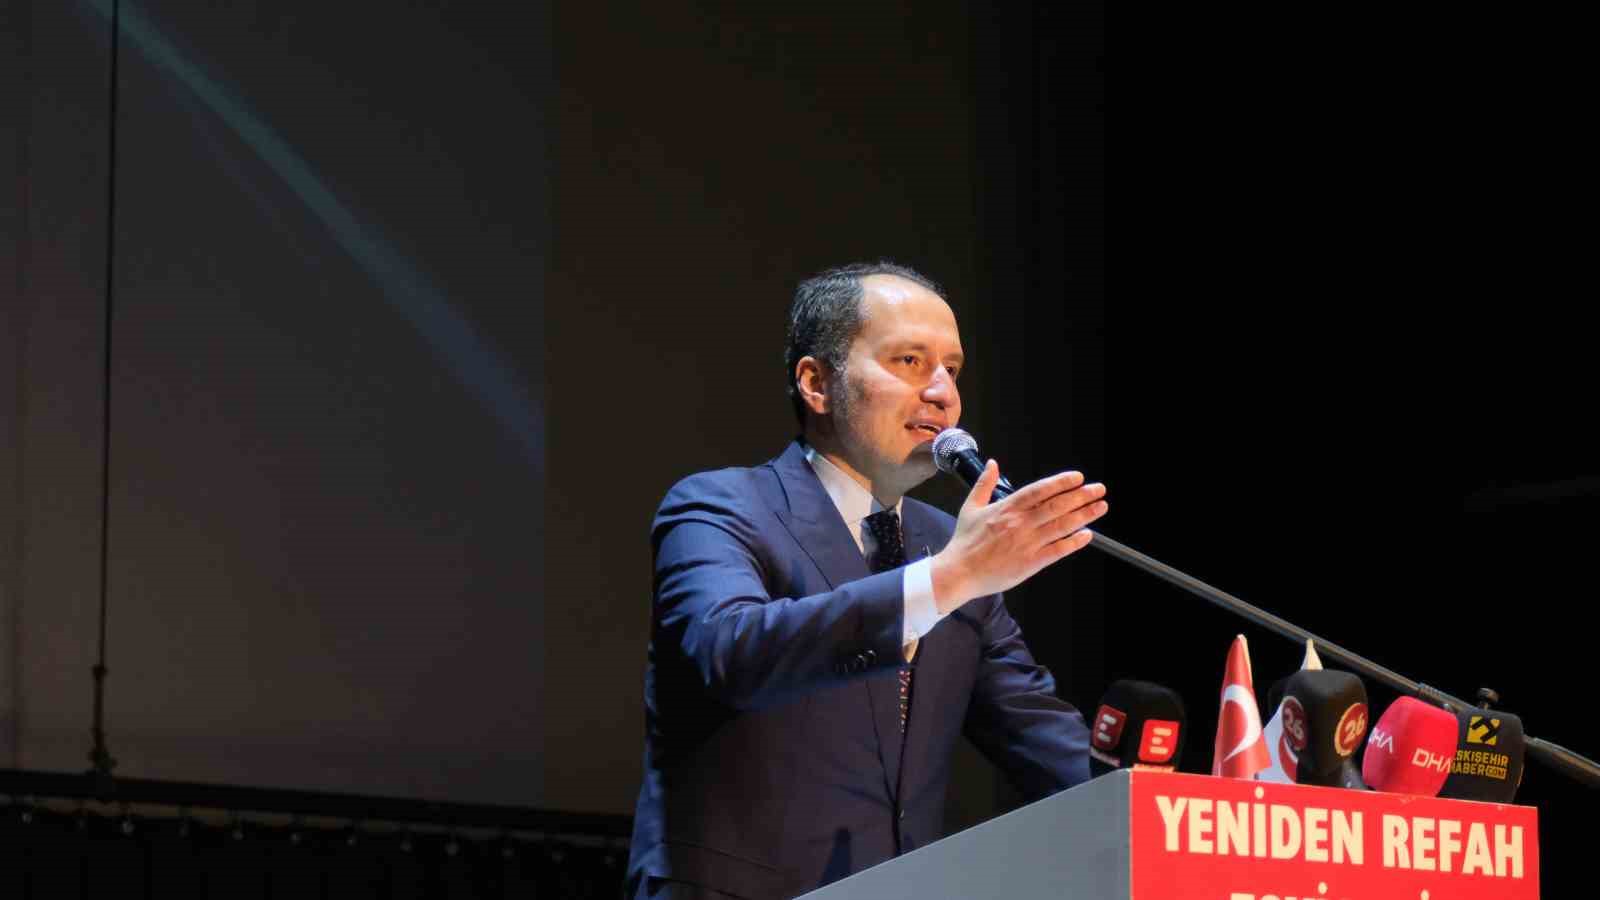 Yeniden Refah Partisi Genel Başkanı Erbakan Eskişehir’de konuştu